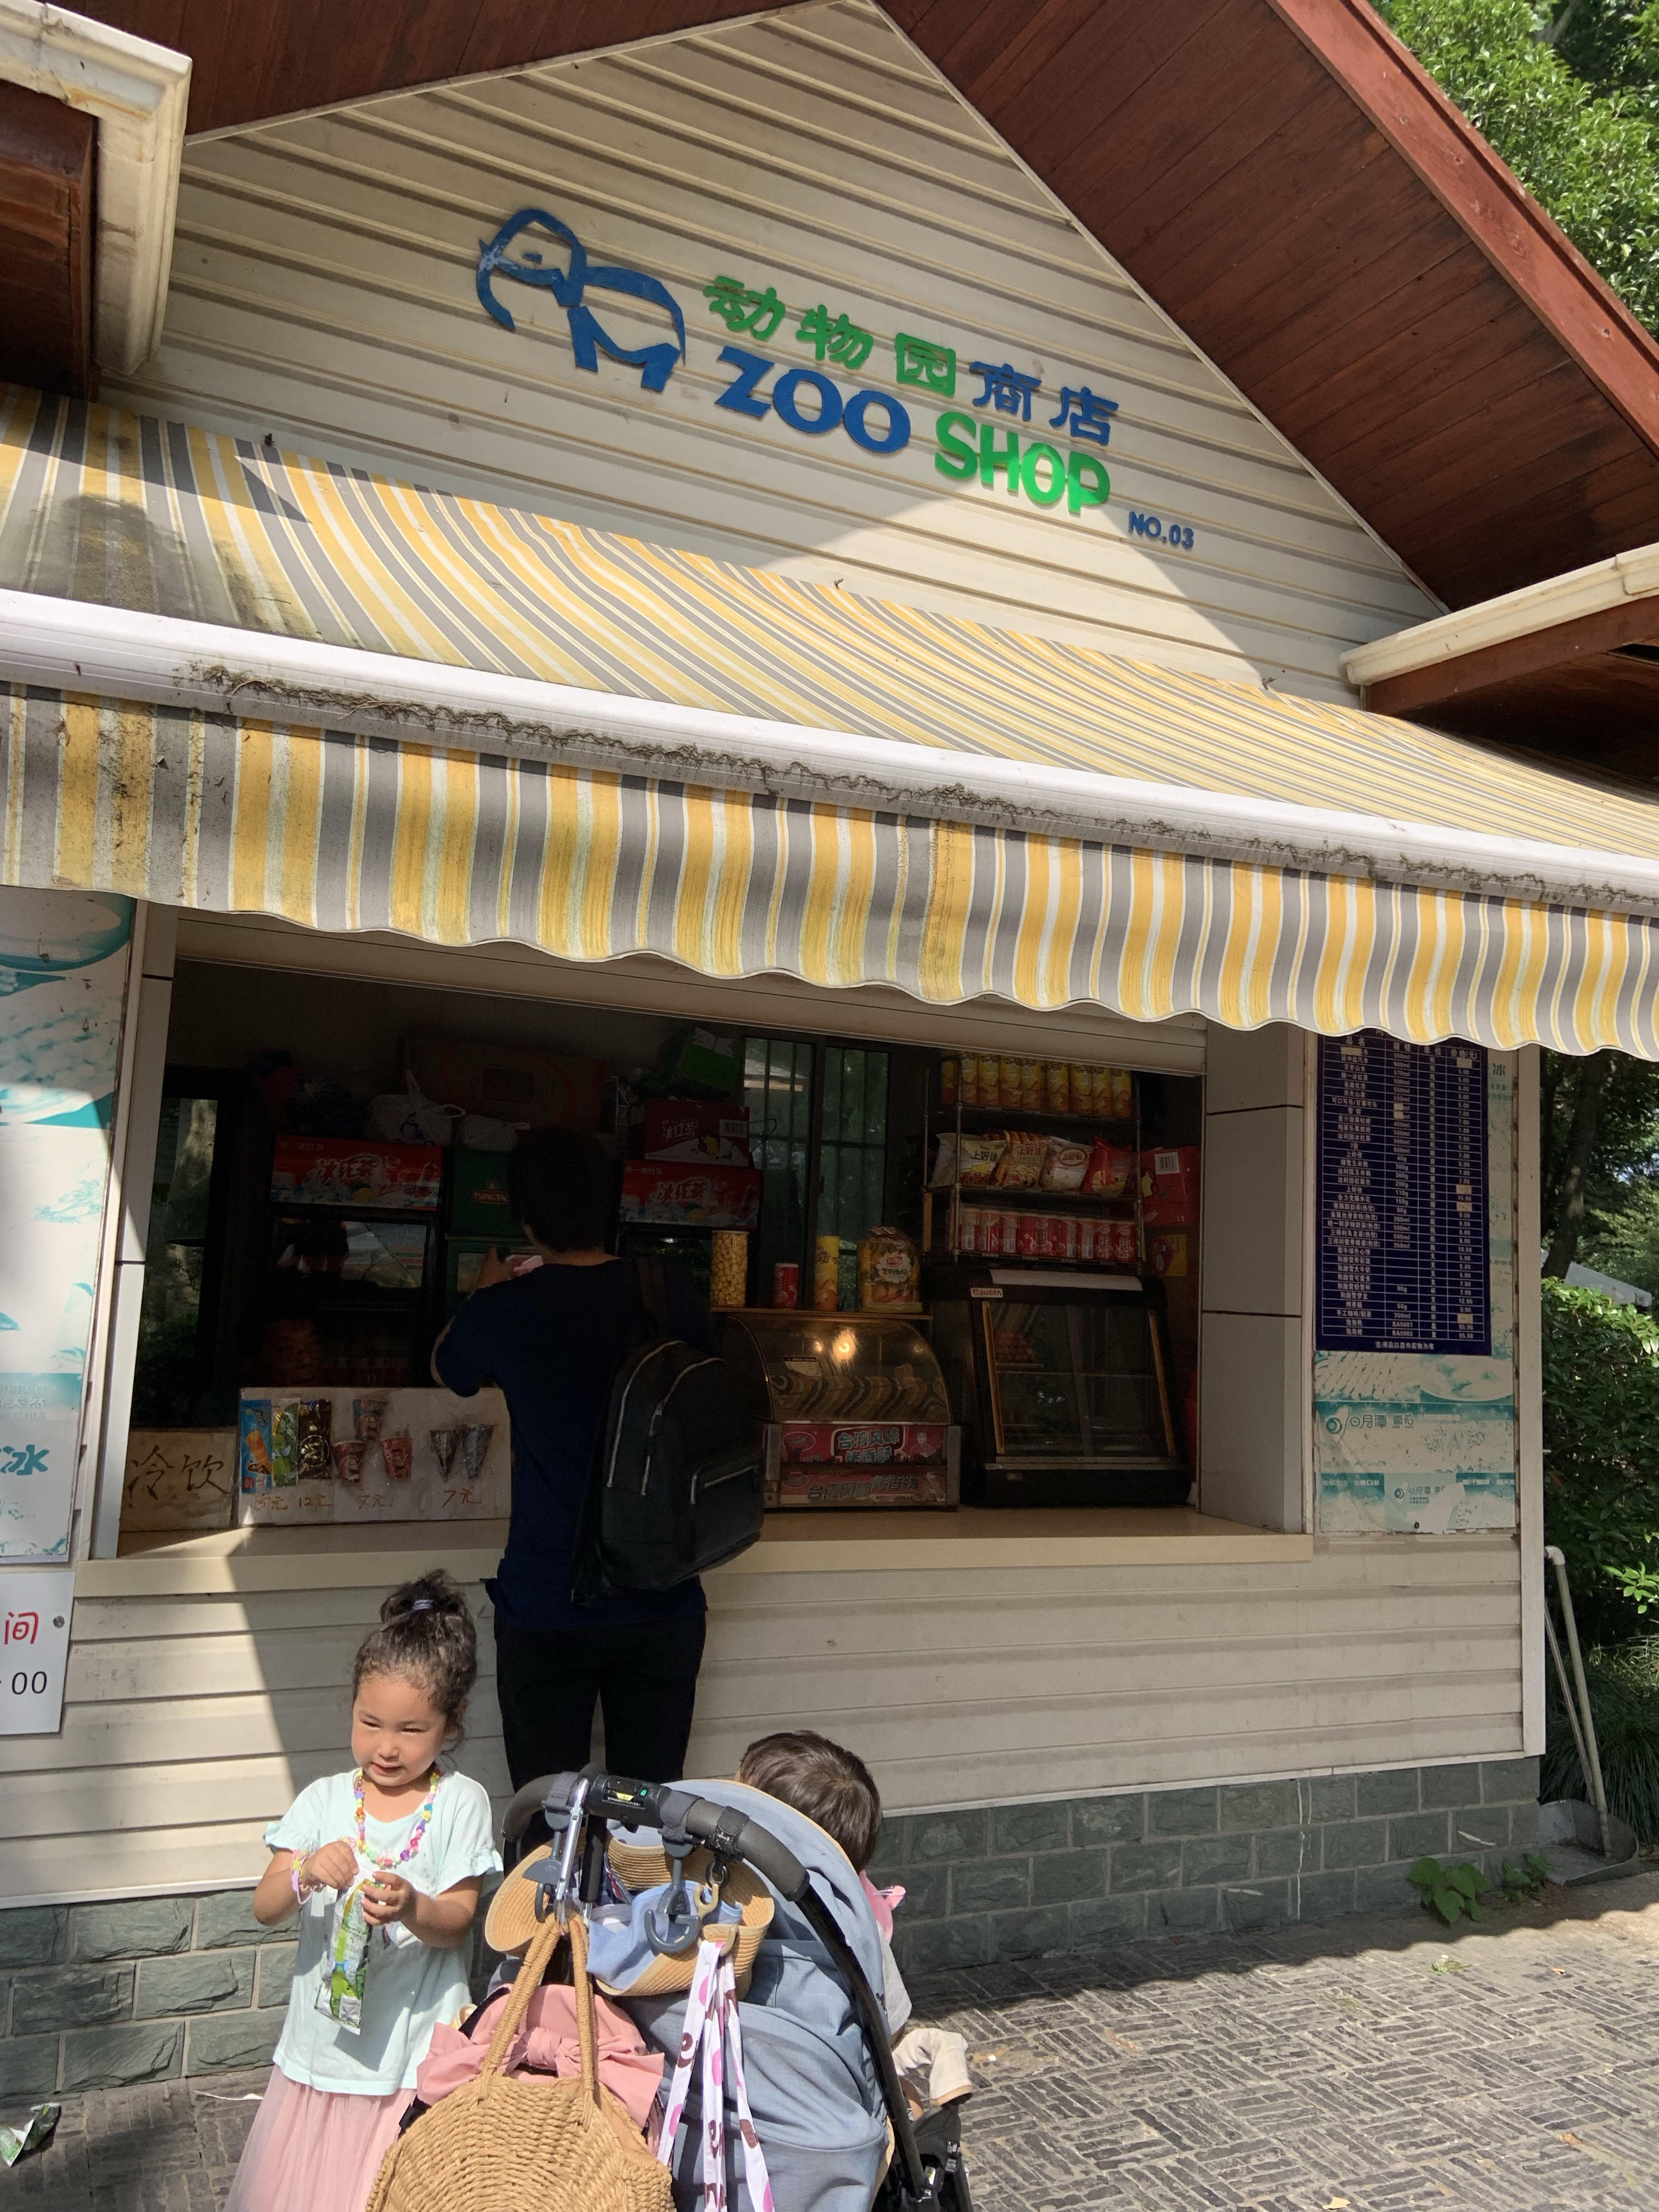 上海動物園